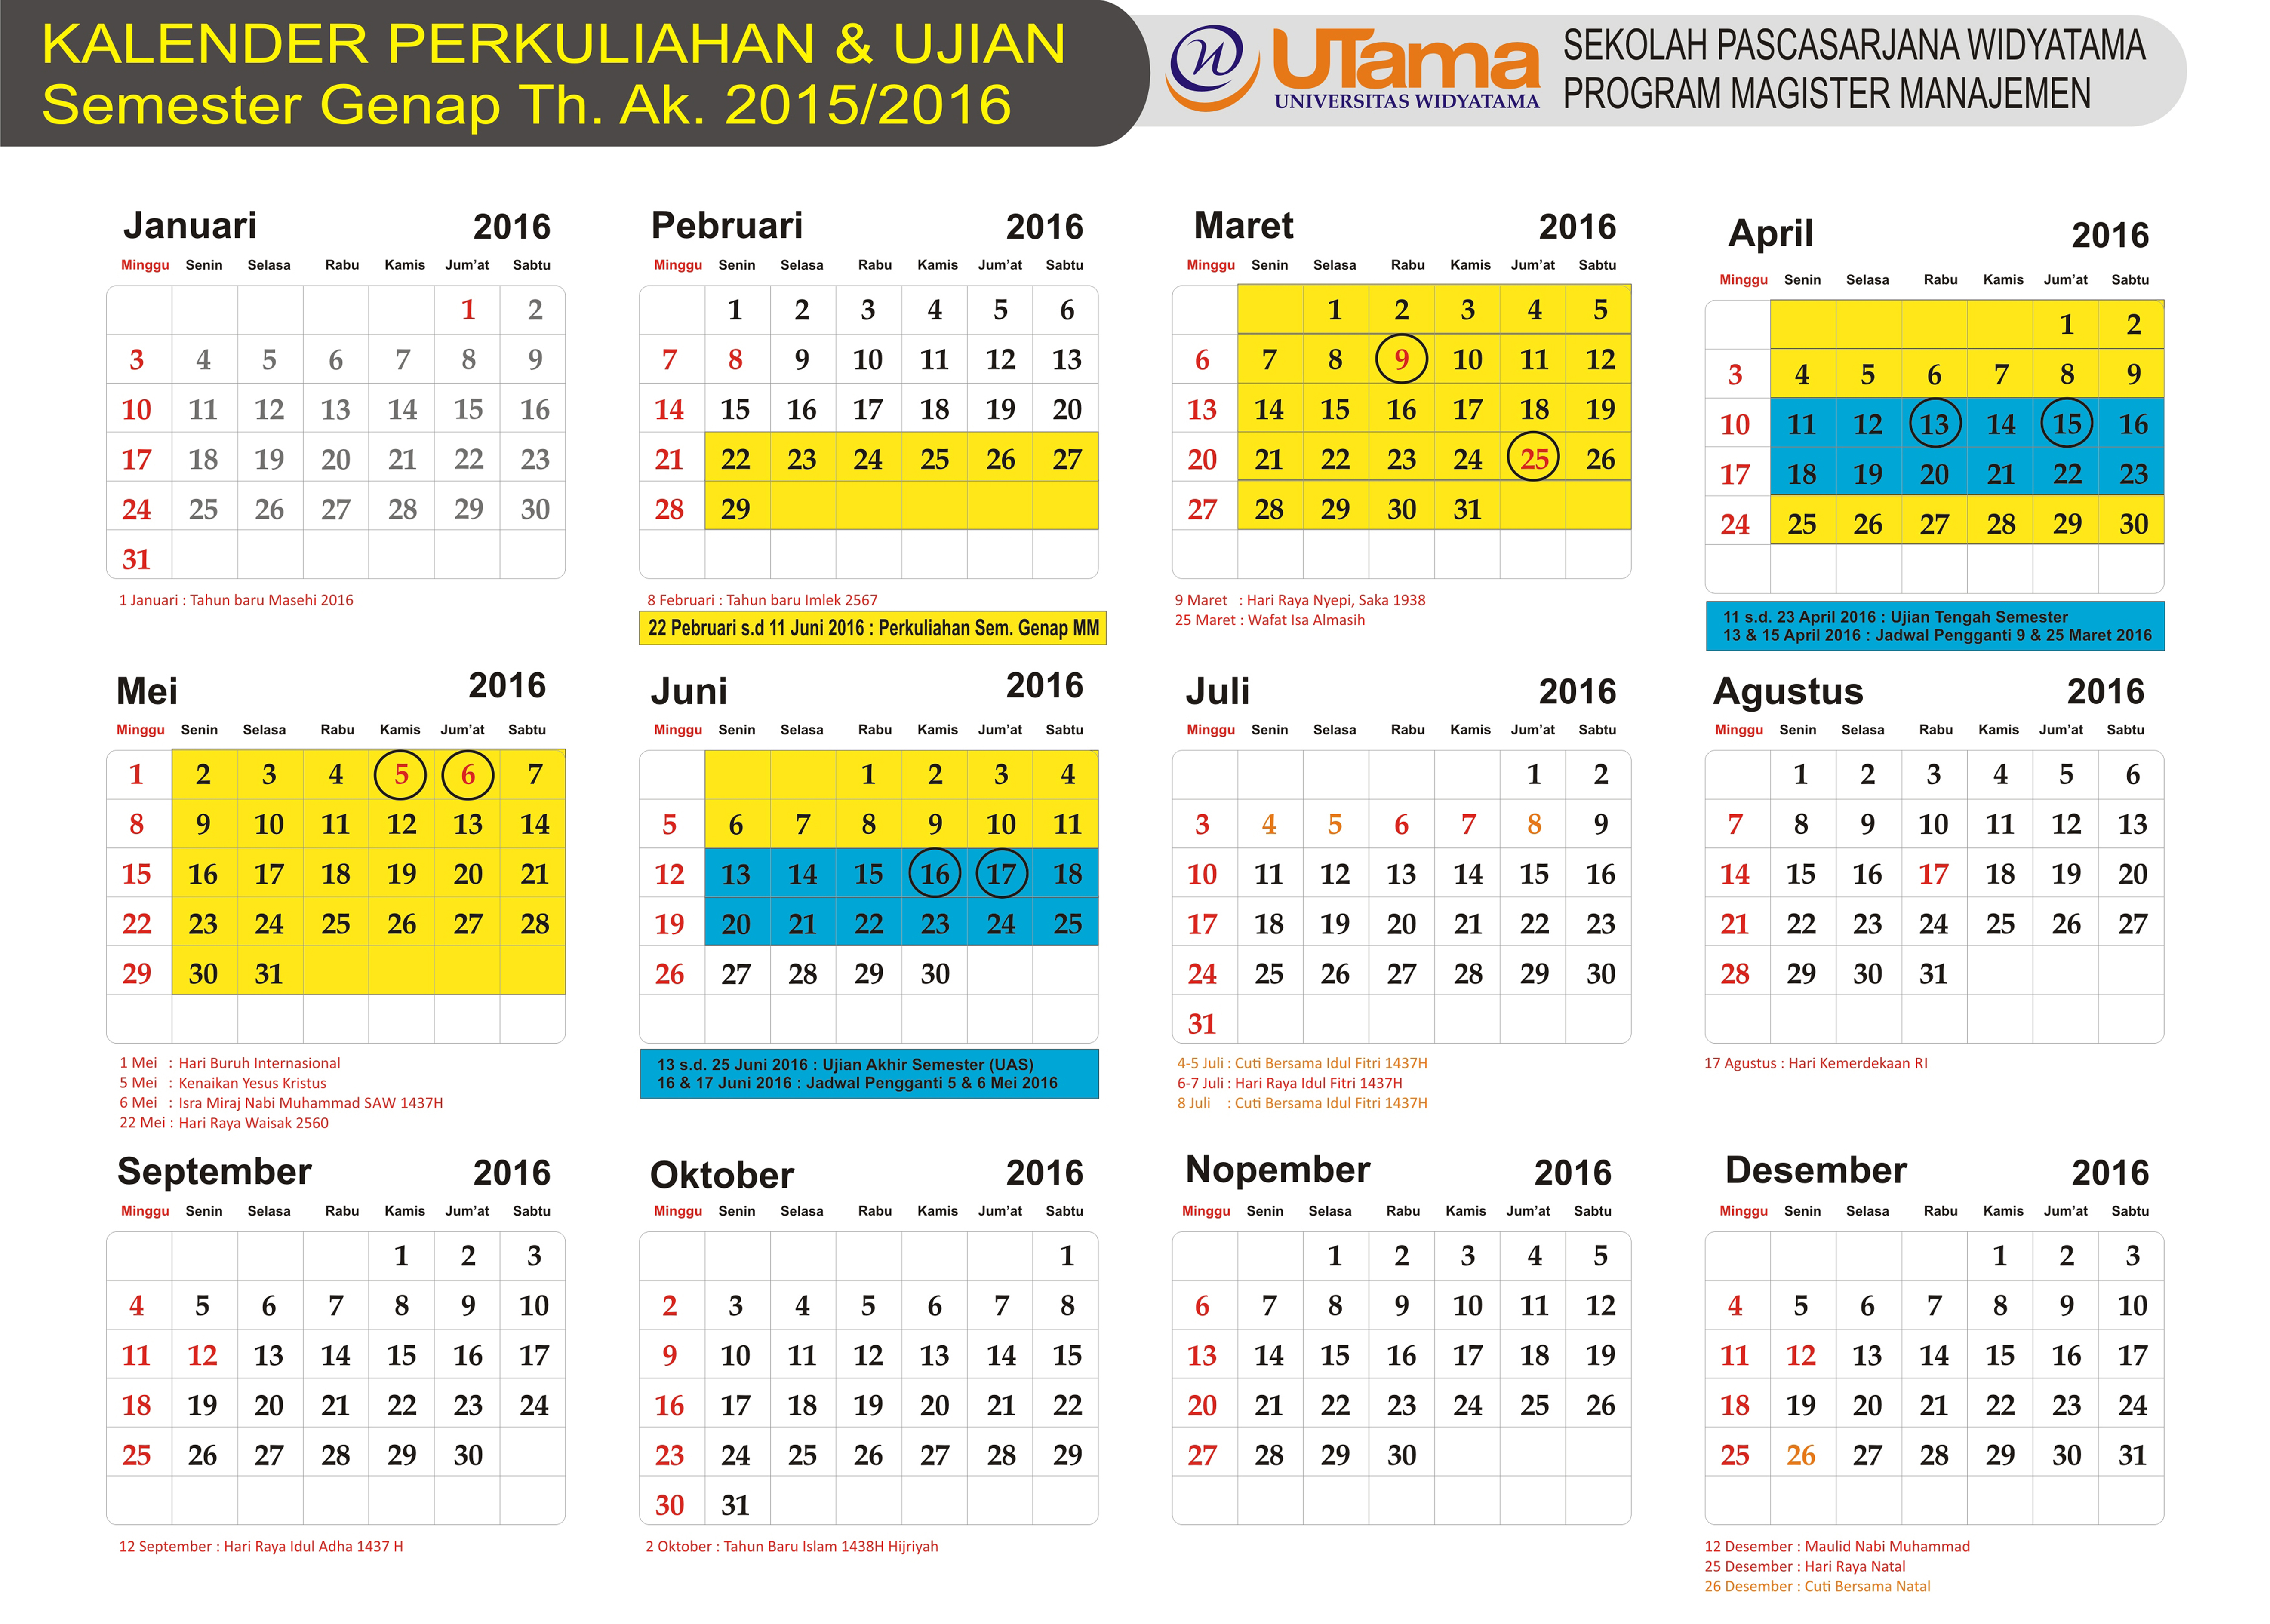 Kalender Perkuliahan & Ujian Program MM Sem. Ganjil 2016-2017